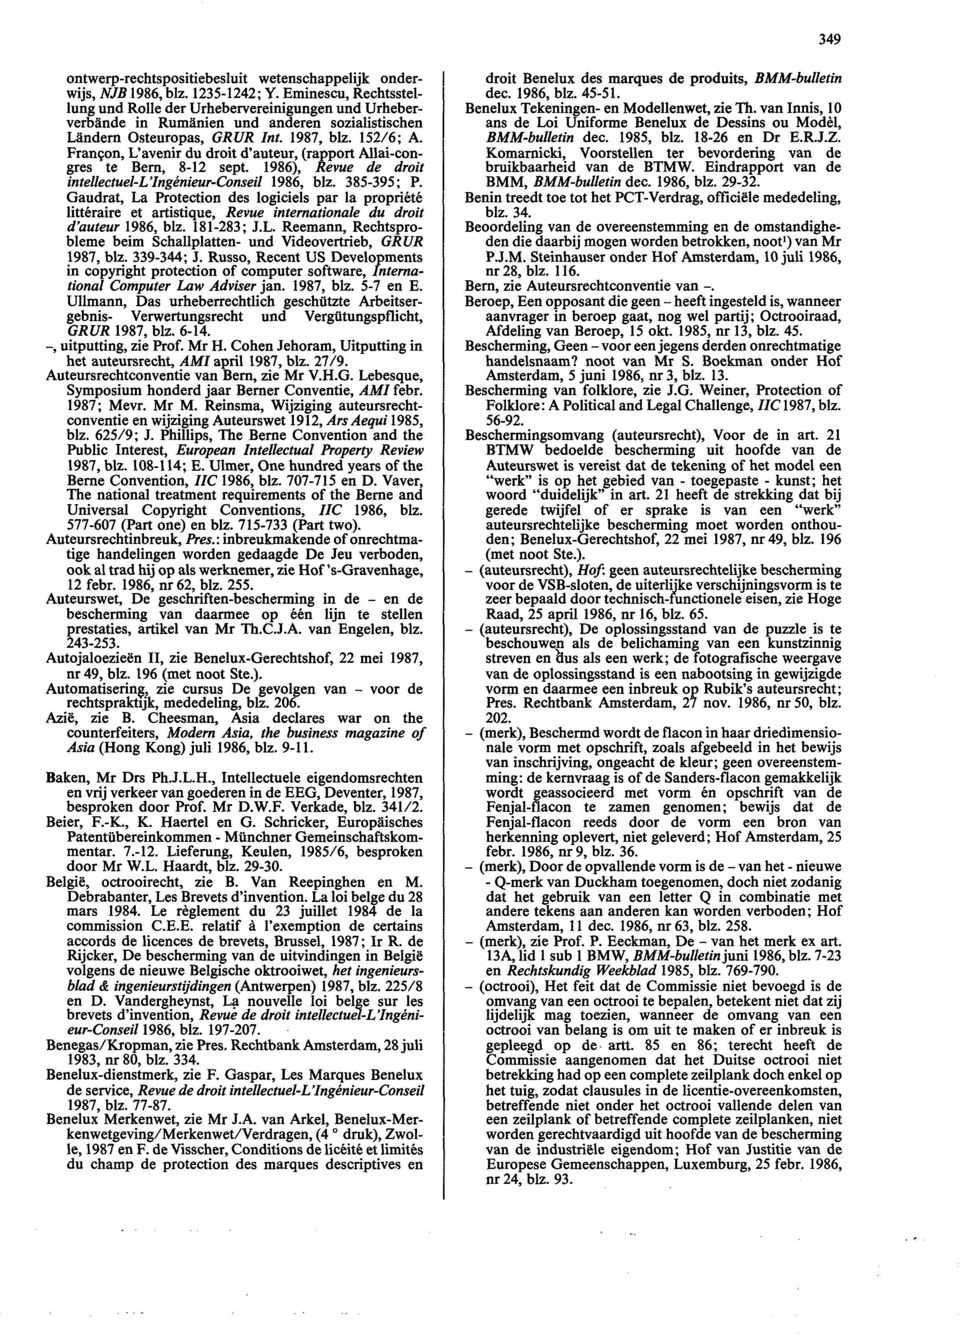 Francon, L'avenir du droit d'auteur, (rapport Allai-congres te Bern, 8-12 sept. 1986), Revue de droit intellectuel-l'ingénieur-conseil 1986, blz. 385-395; P.